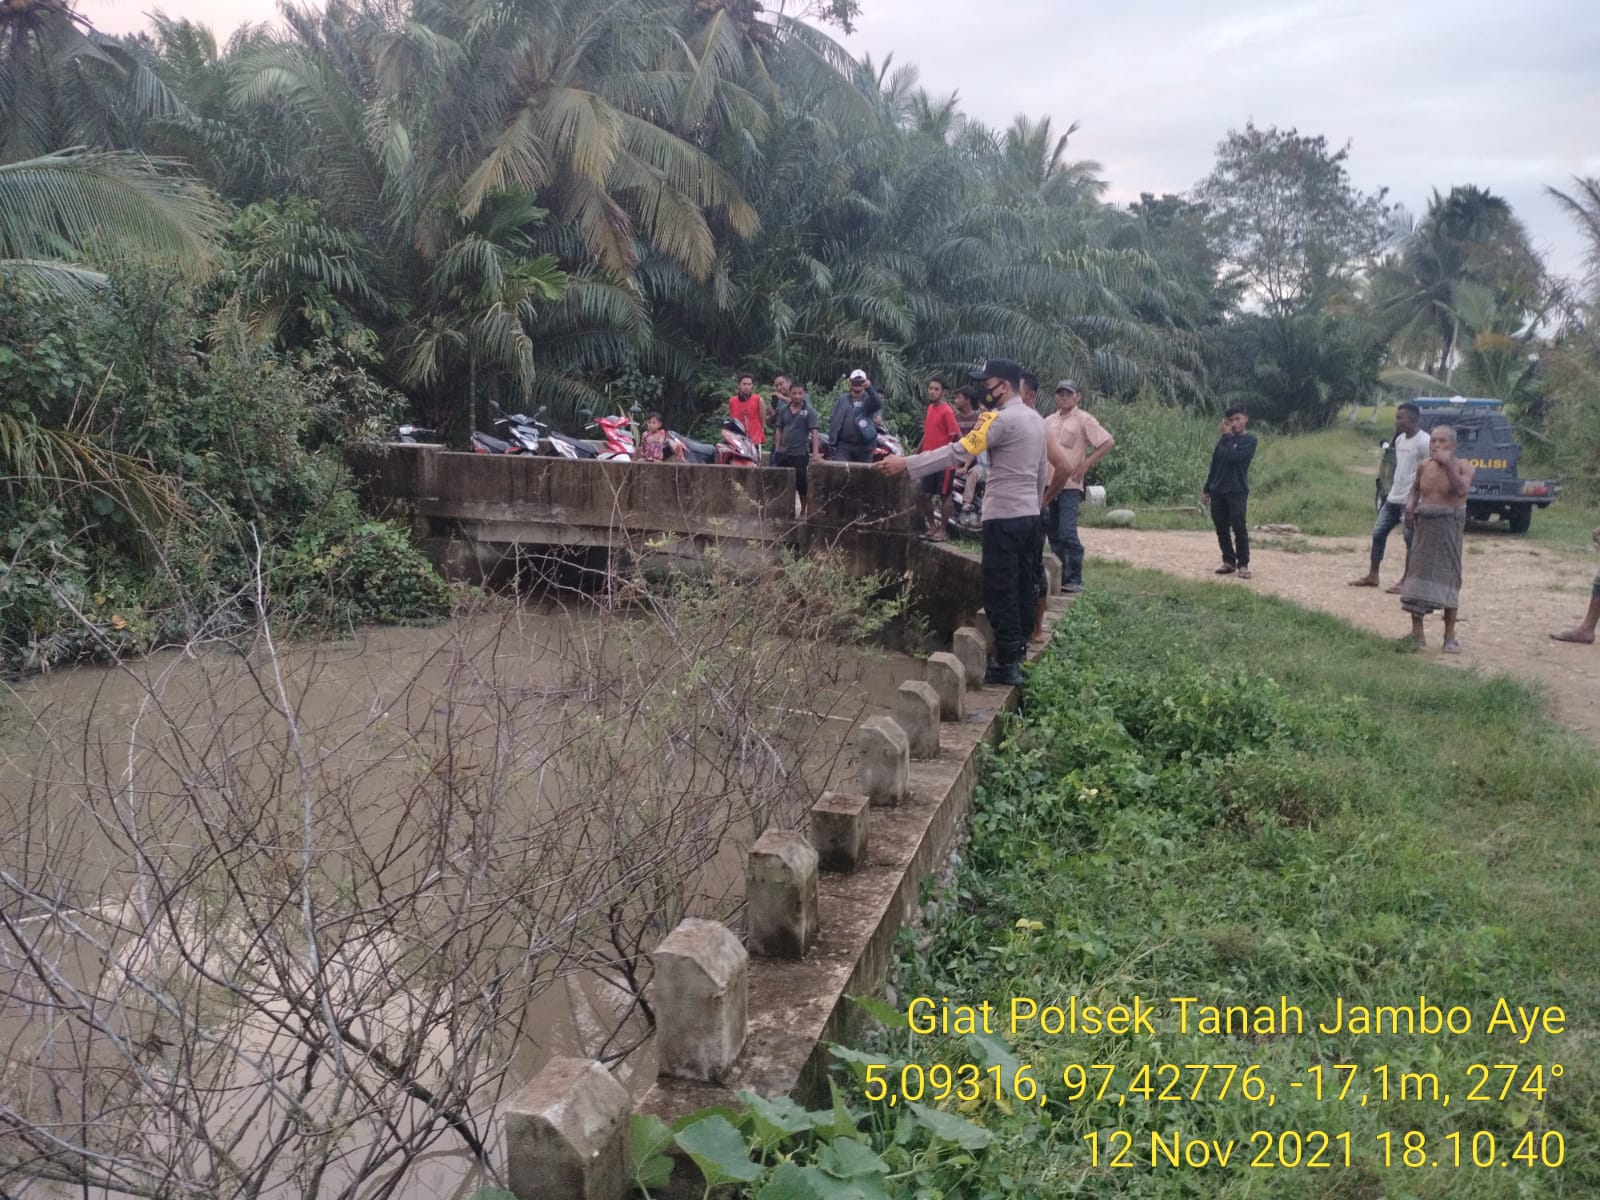 2 Bocah Laki-laki Tenggelam Di Irigasi Dusun Ujung Lawang Tanah Jambo aye, 1 meninggal dunia.